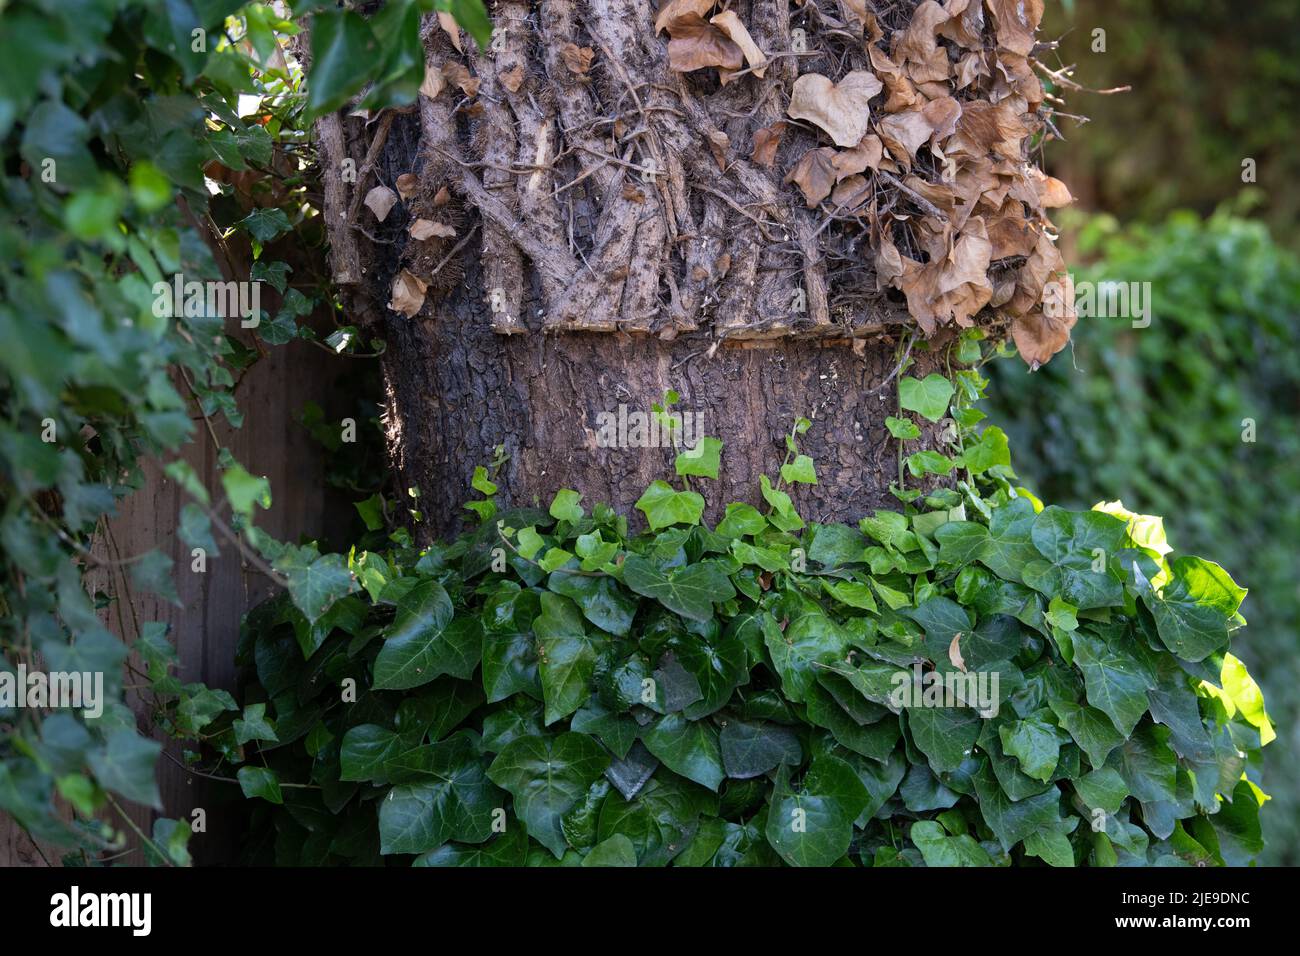 Taglio dell'edera - ricrescita dalla base che risale l'albero - Regno Unito Foto Stock